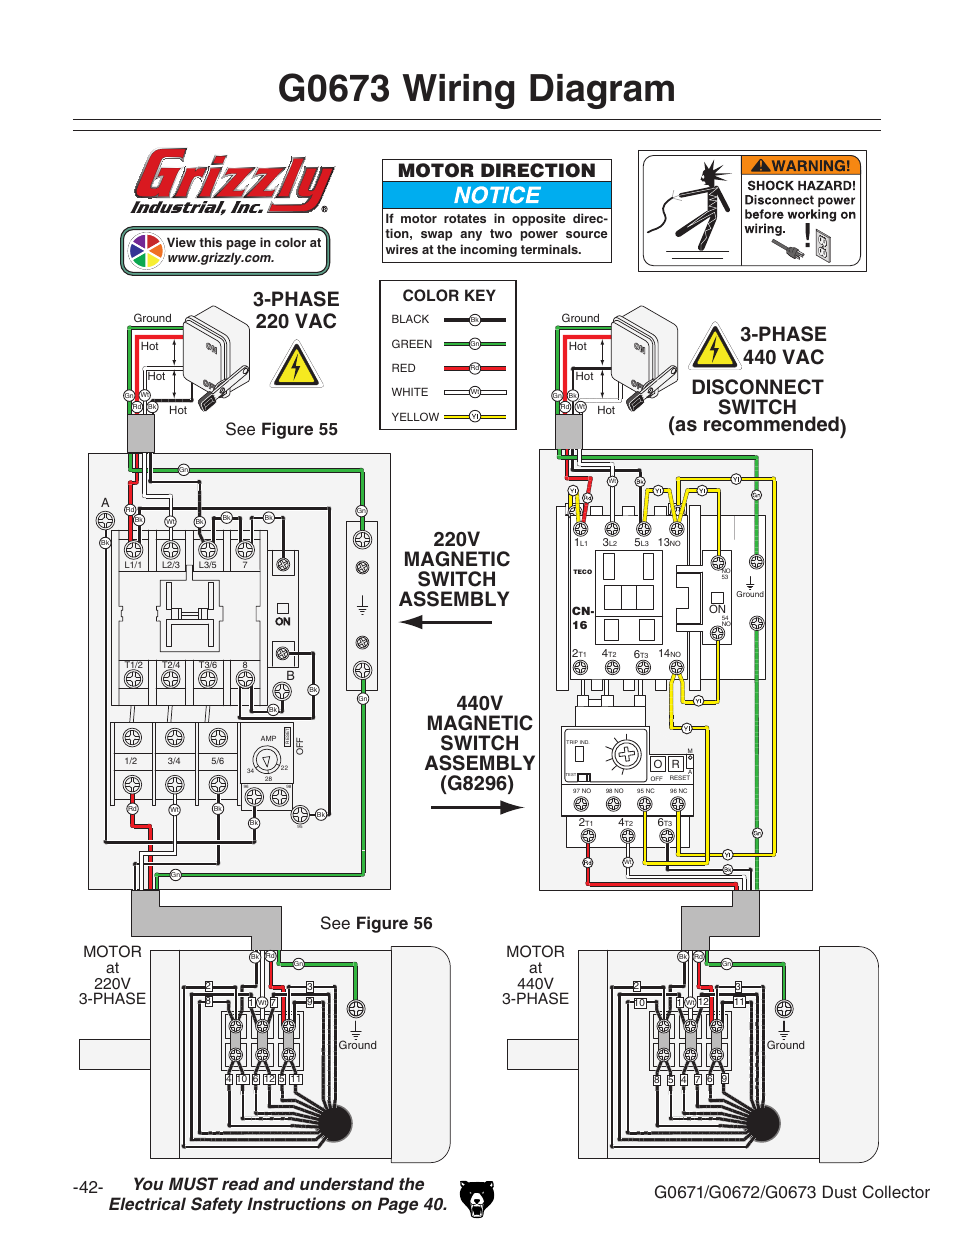 31 Wagner Electric Motor Wiring Diagram - Wiring Diagram Database